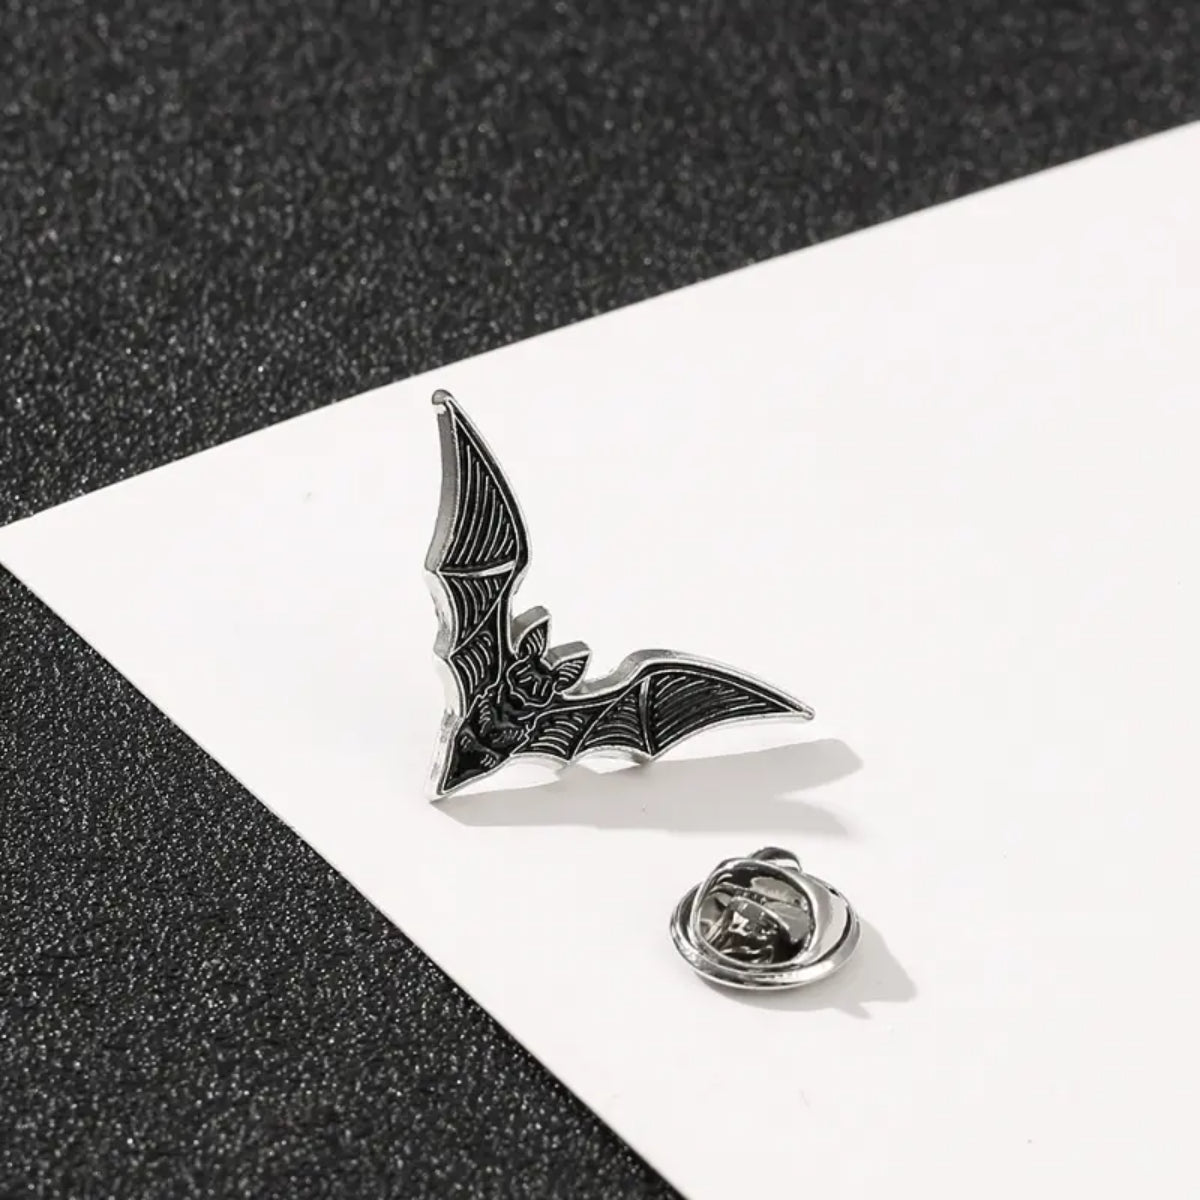 Ro Rox Bat Character Pin Brooch Gothic Badge